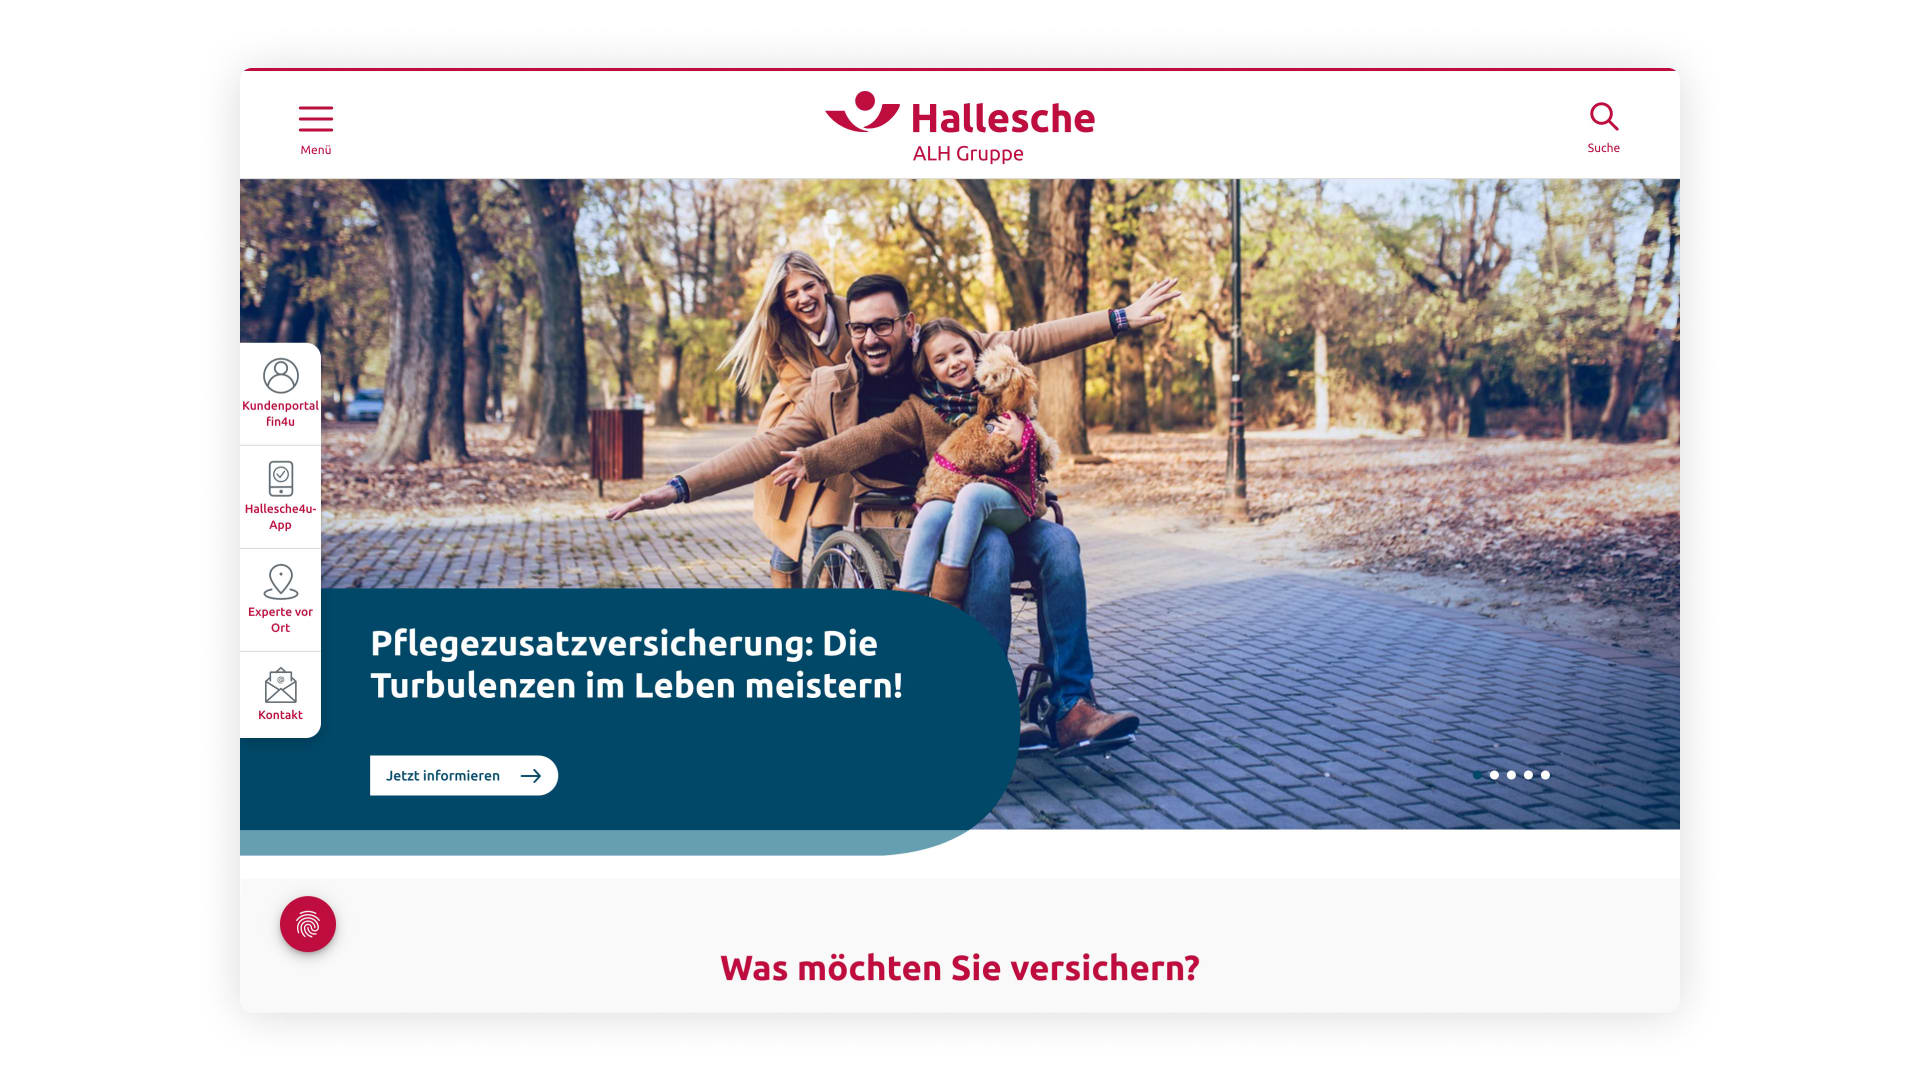 Das Bild zeigt einen Teil der Website der Hallesche ALH Gruppe. Der Teil bewirbt mit einem Rollstuhlfahrer samt dessen Familie die Pflegezusatzversicherung.